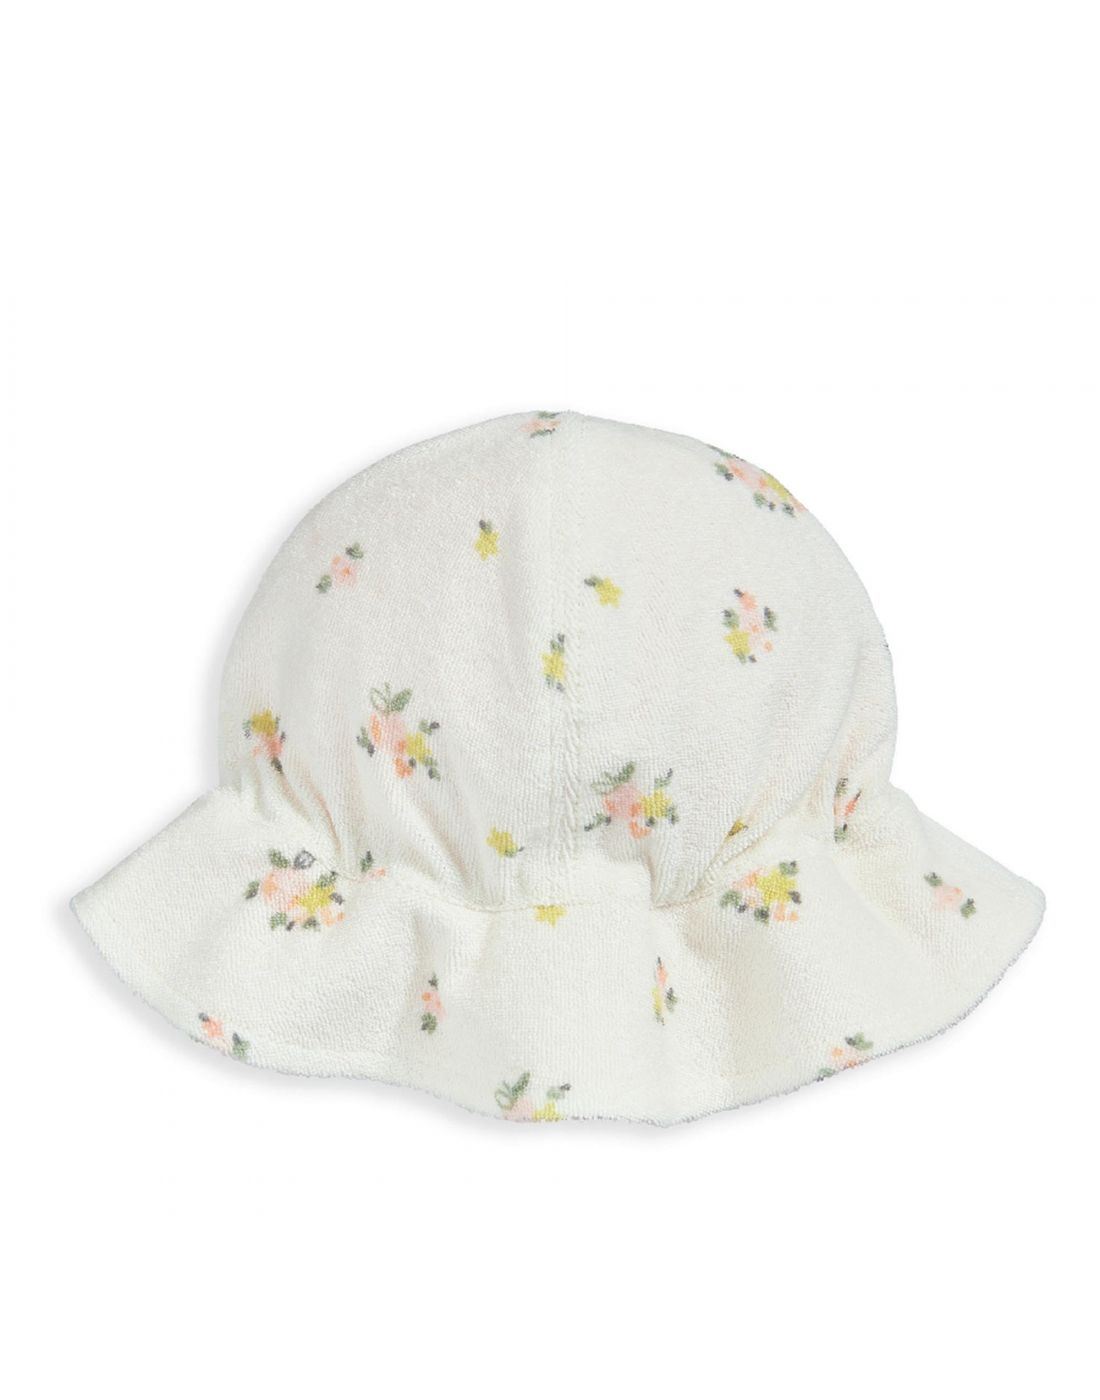 Mamas & Papas Floral Towelling Romper & Hat Outfit Set